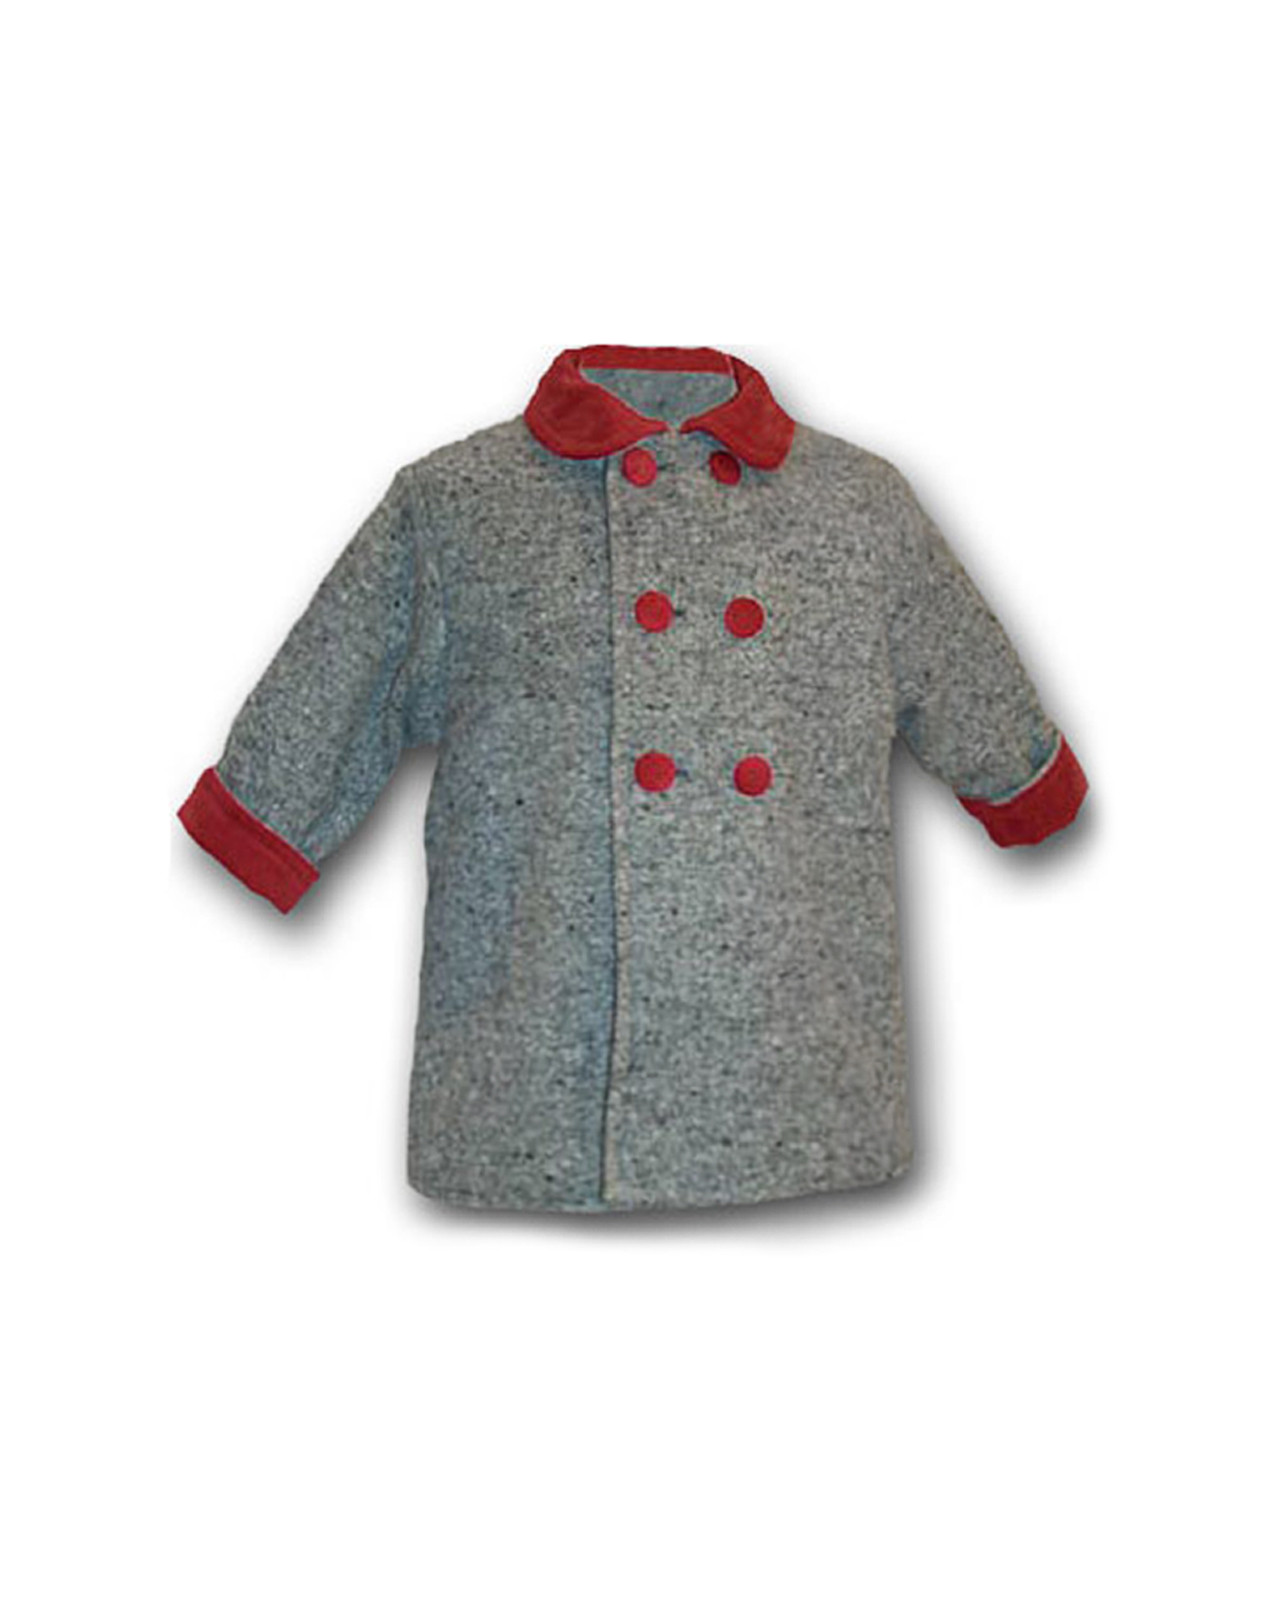 Joy cappottino per baby , in lana grigia con rifiniture di velluto rosso.